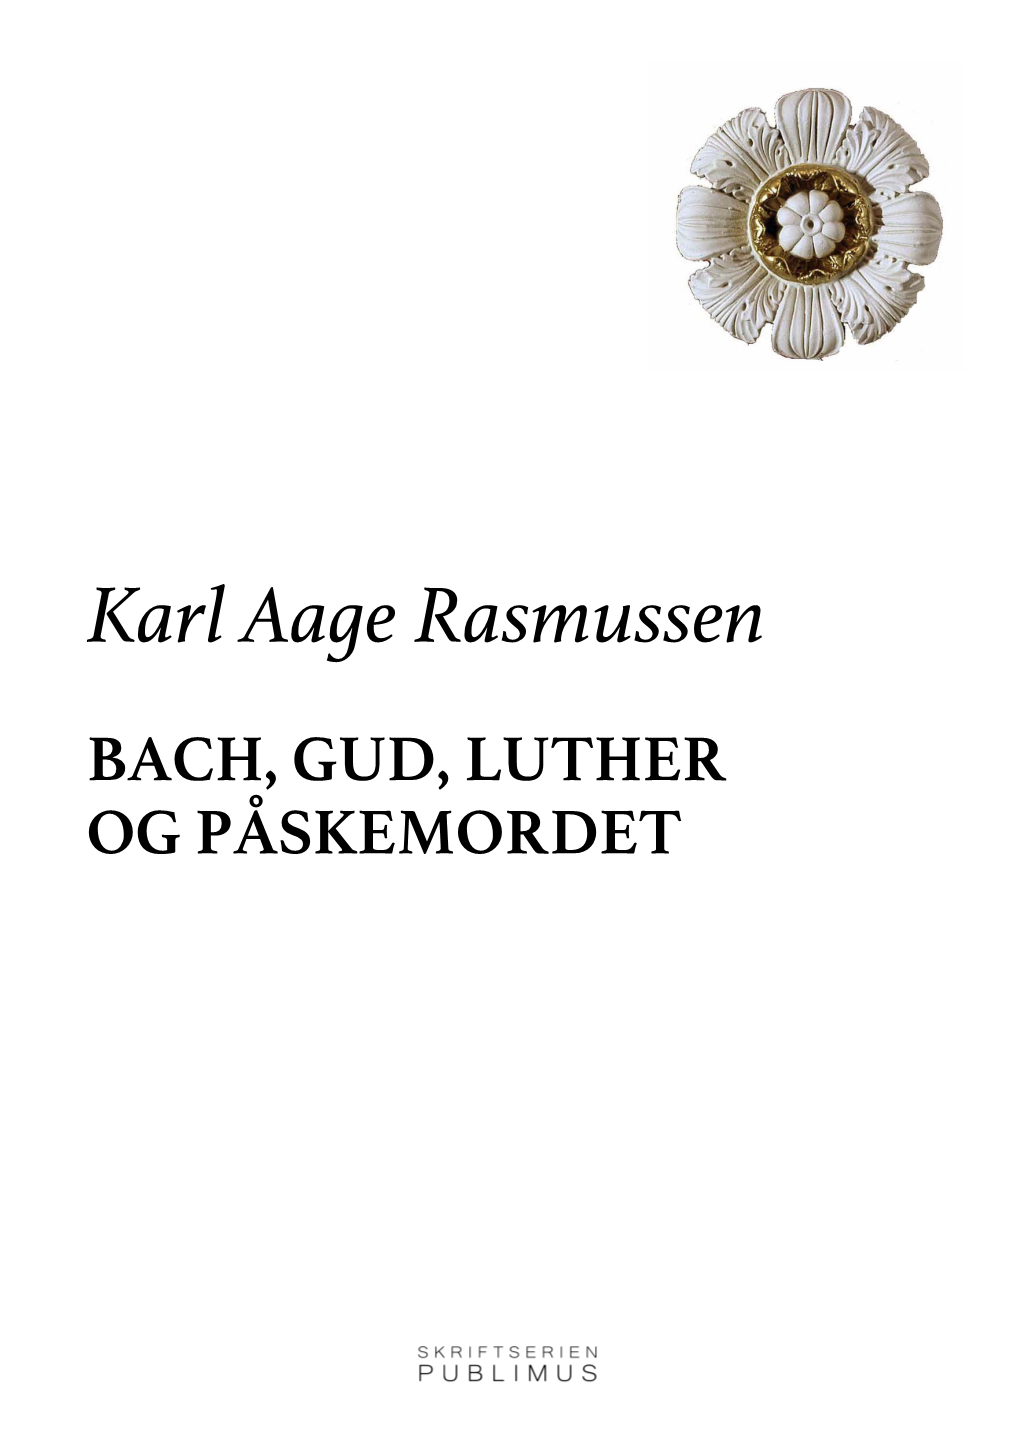 54-Rasmussenkarlaage A5 Minus Forside 2020-03-18